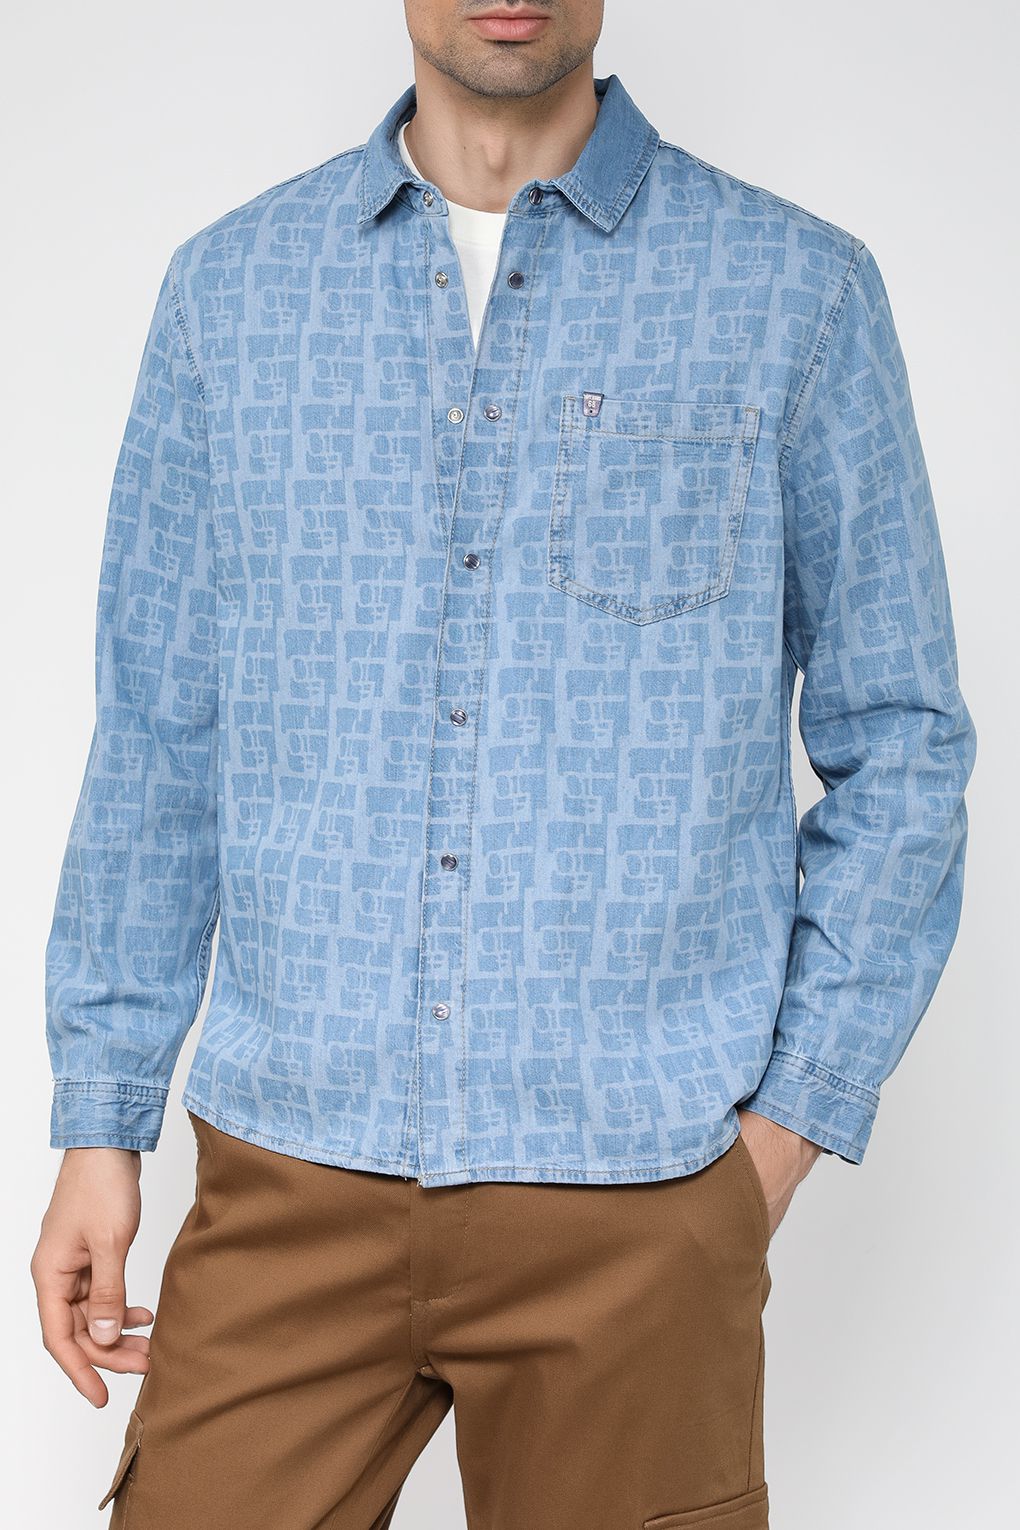 Джинсовая рубашка мужская Loft LF2032744 синяя M